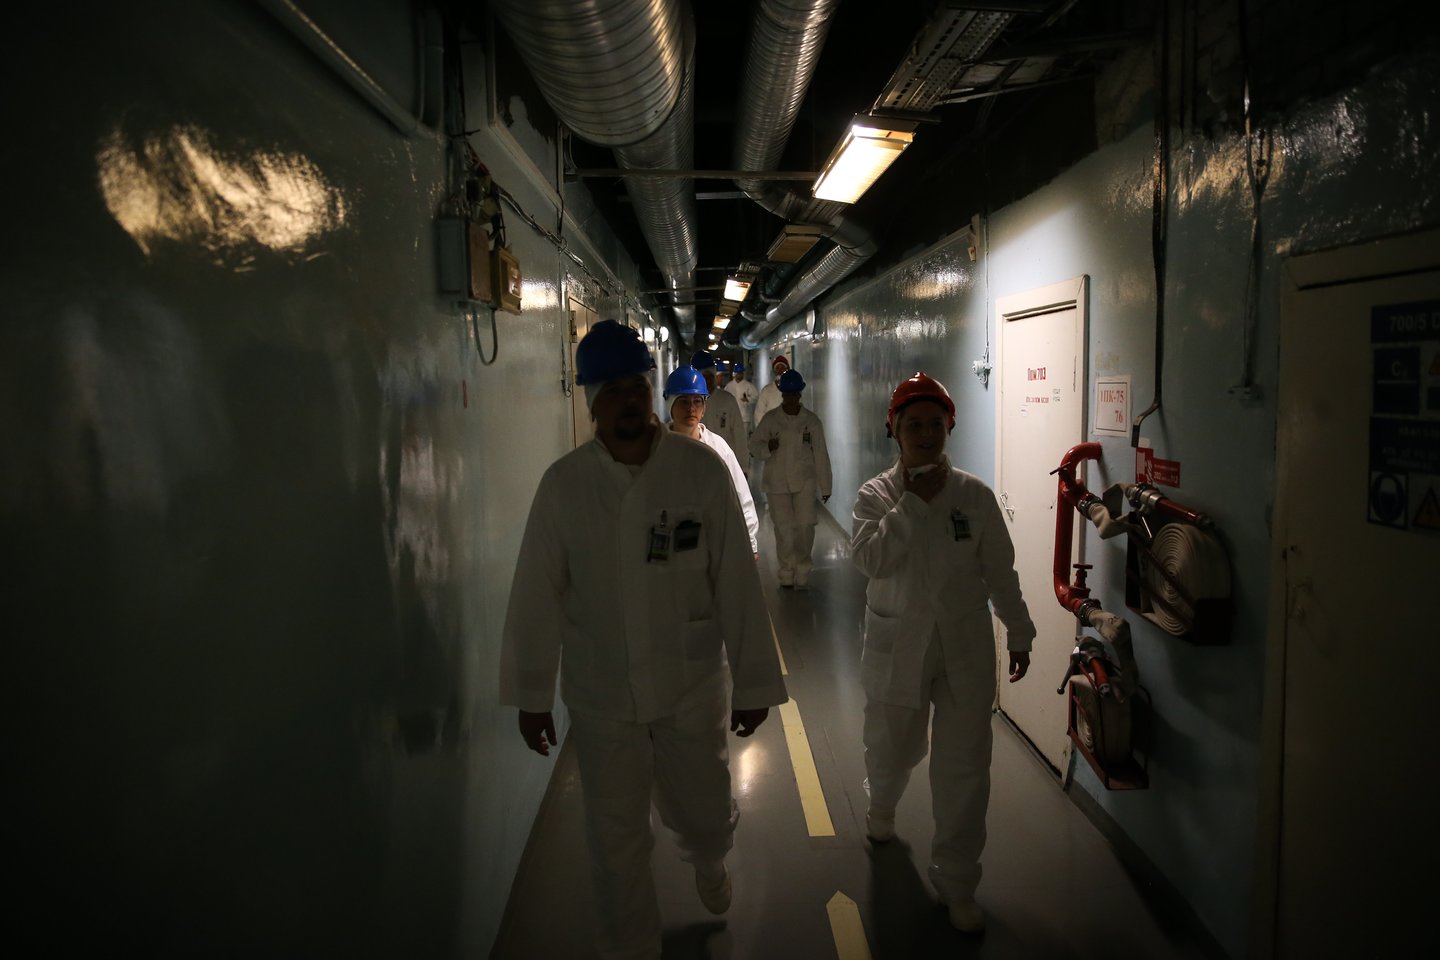 600 metrų koridorius veda į reaktoriaus salę. Nors, atrodytų, koridorius neblogai apšviestas, čia vis dėlto vyrauja prietema. Užtat – pavydėtinai švaru.<br> R. Danisevičiaus nuotr.